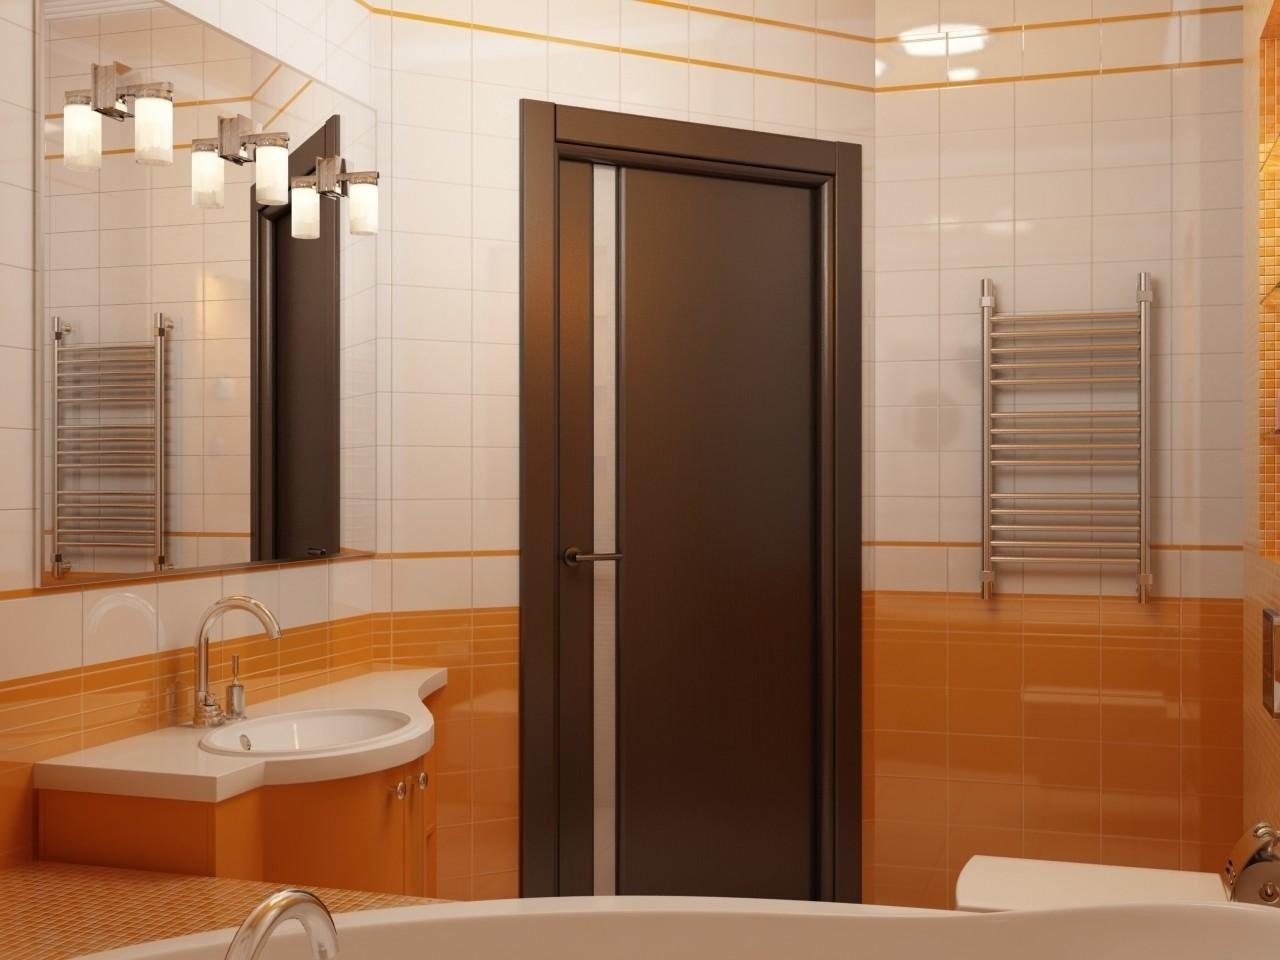 Леруа двери ванная туалет. Дверь в ванную. Межкомнатные двери в ванную. Дверь для ванной комнаты и туалета. Двери в ванную комнату и туалет.